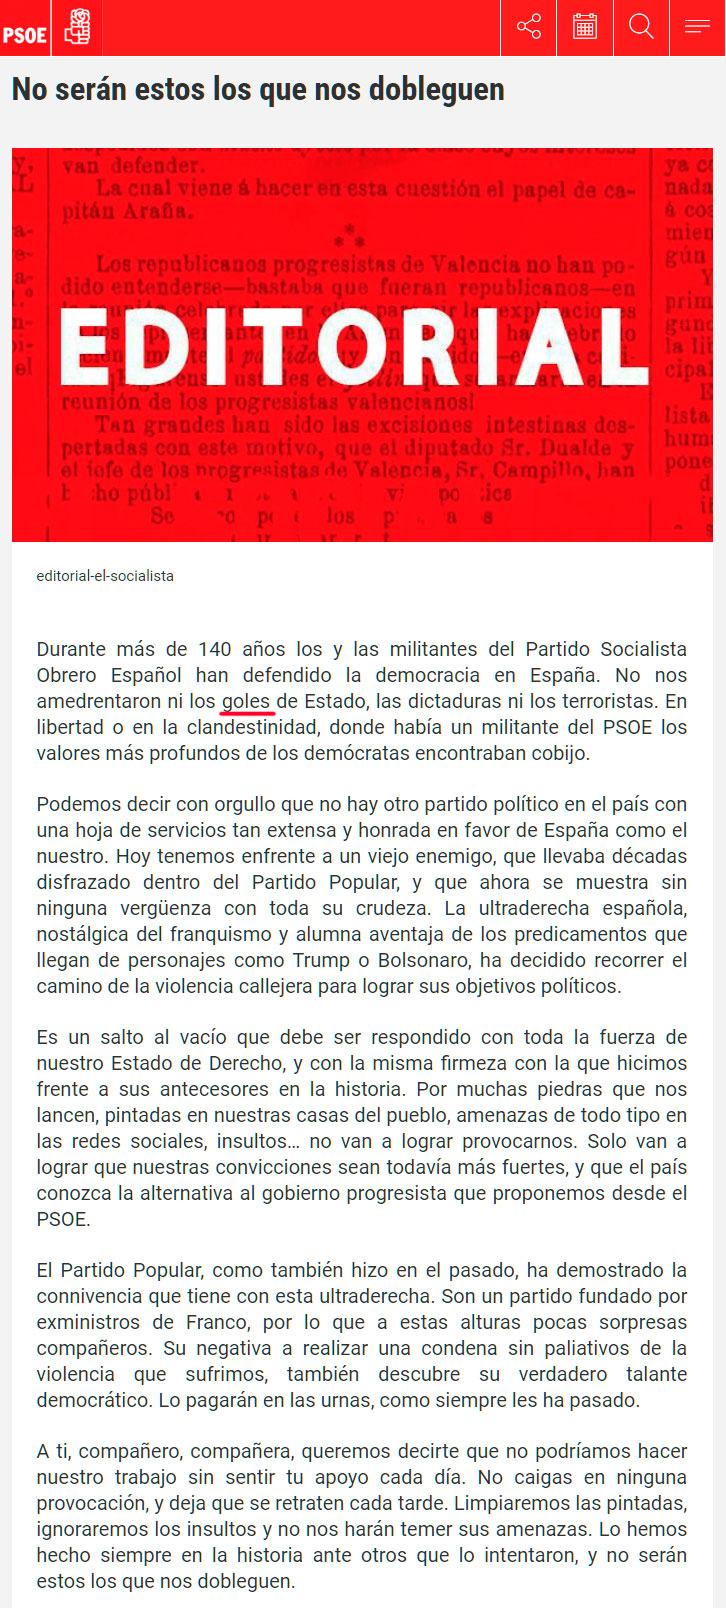 Esta es la lectura que hace el PSOE tras intentar formar gobierno con votos conseguidos con grandes mentiras, tras regalar miles de millones al independentismo, y después de pactar más desigualdad entre españoles.